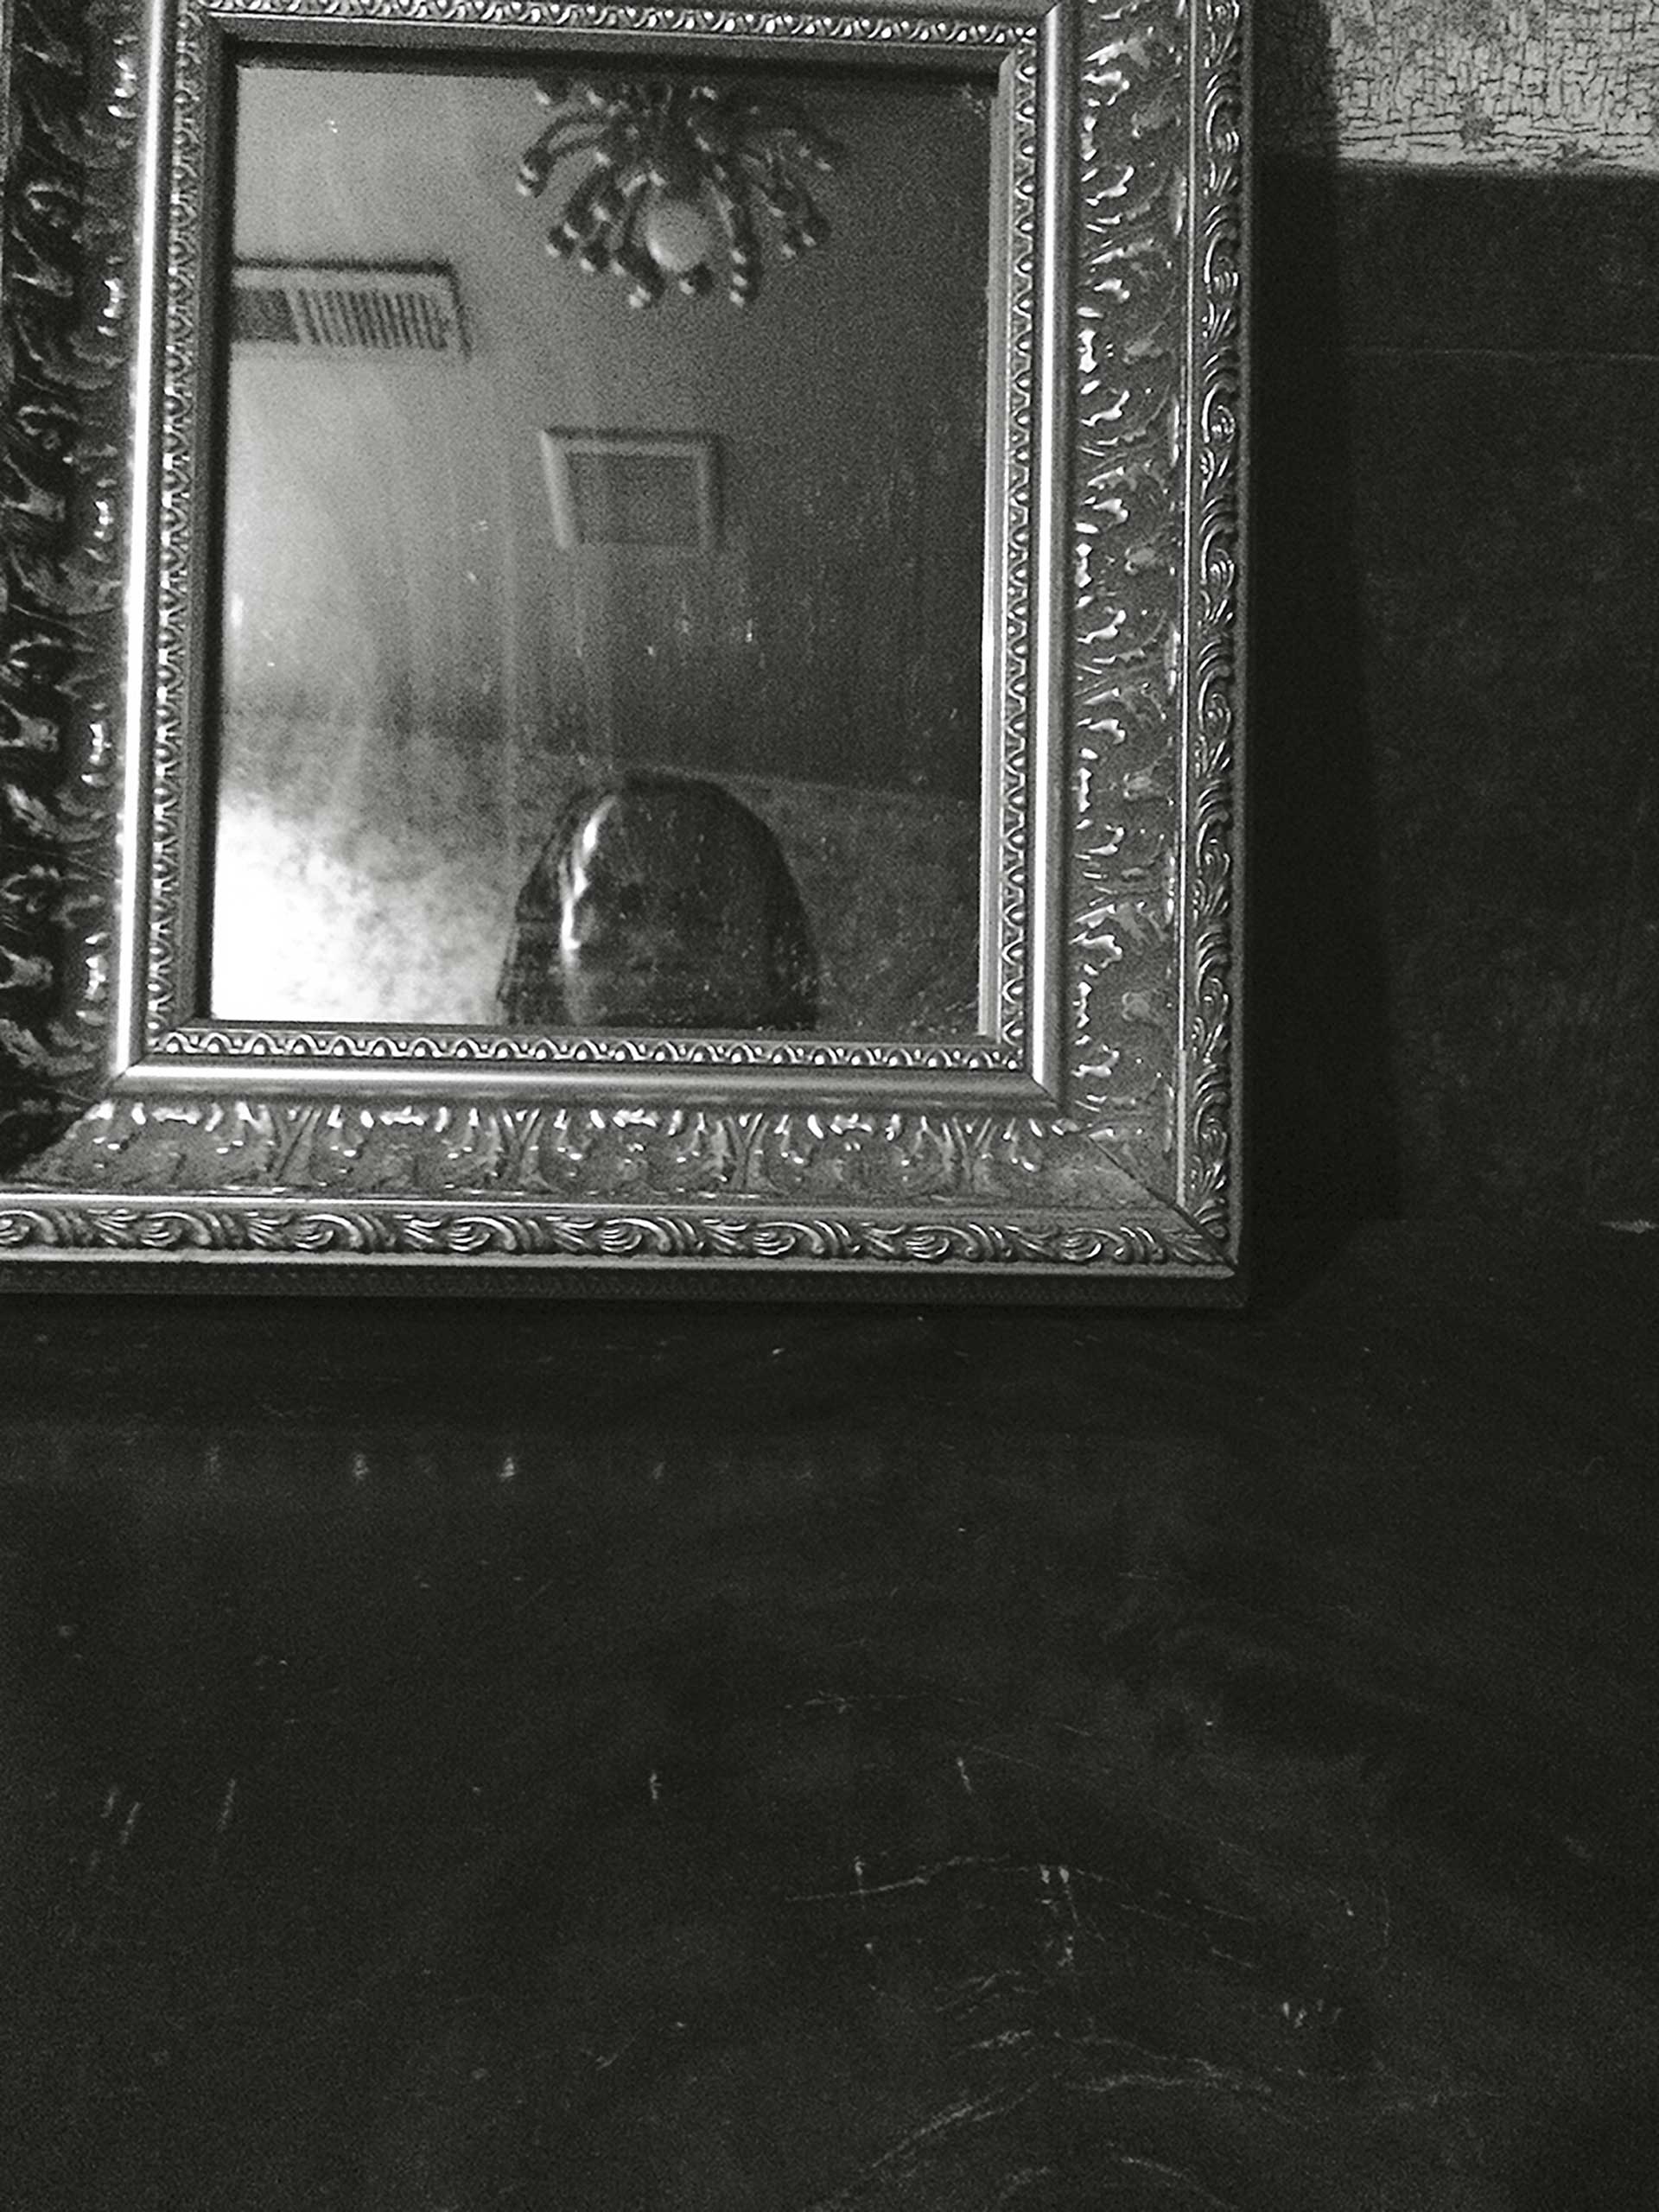 Self-Portrait in Mirror, Harlem Restaurant, 2015